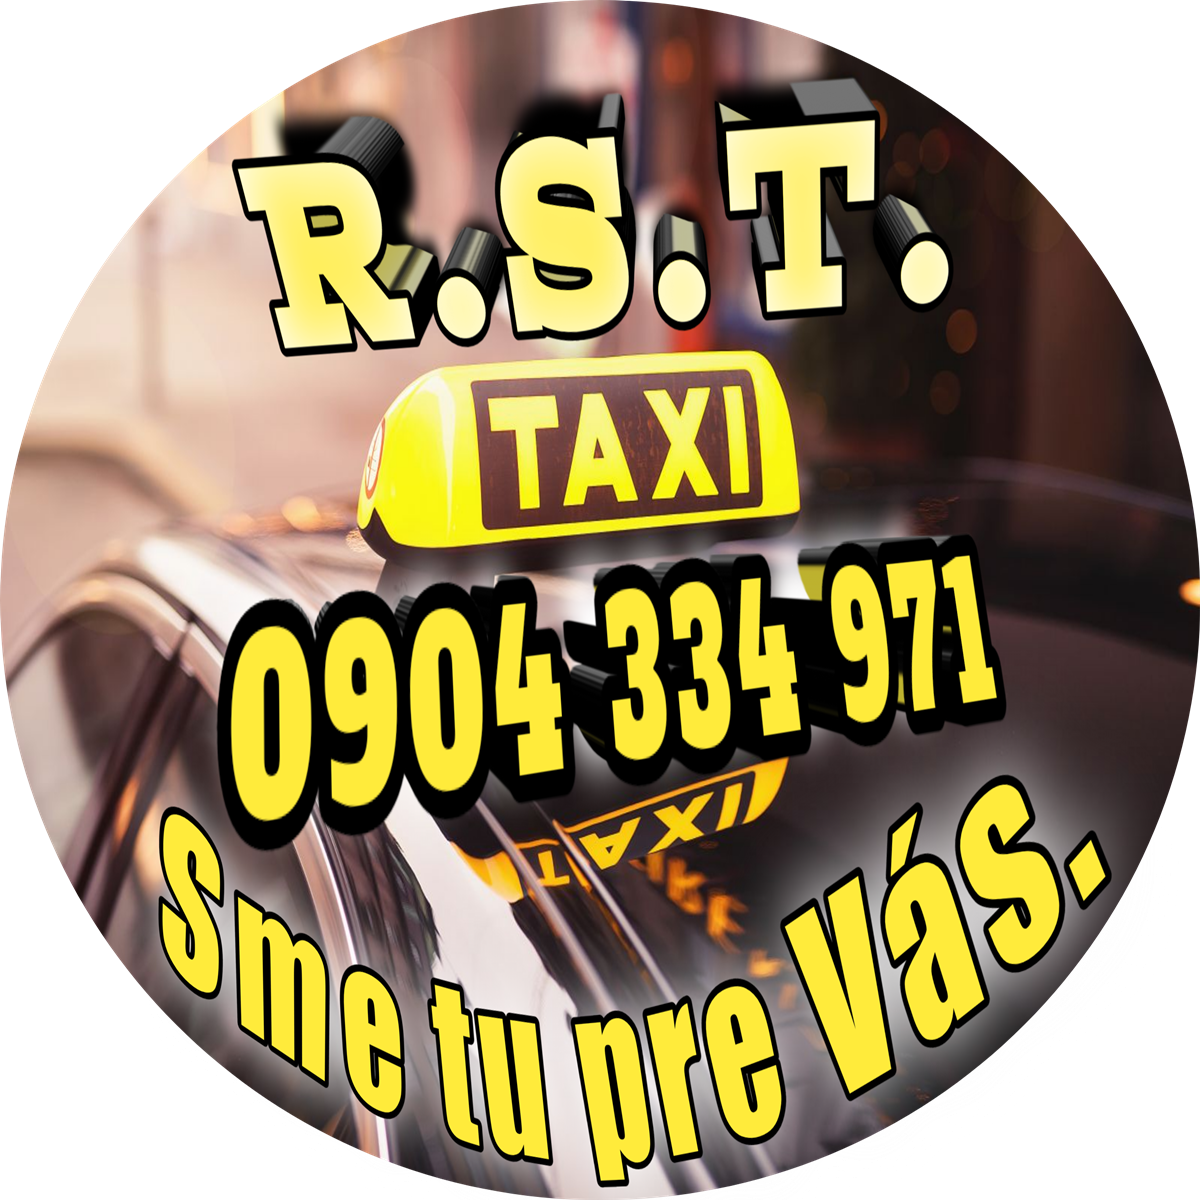 Taxislužba, Taxi, Kuriér, Doručovacie služby, Osobná preprava  - R.S.T. TAXI - Podbrezová 